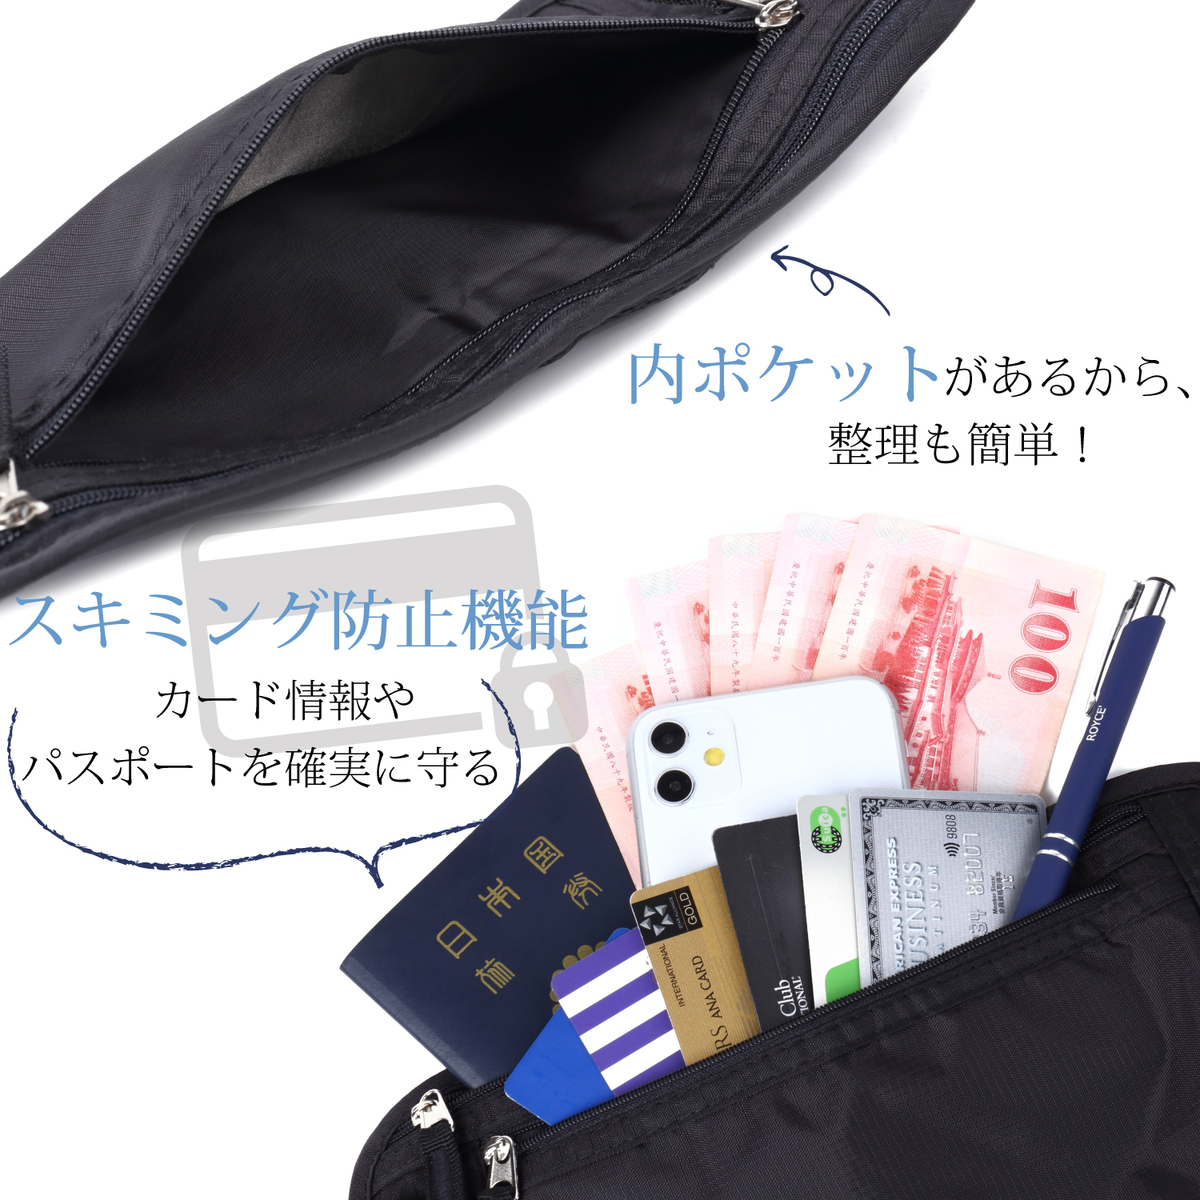 ウエストポーチ セキュリティ パスポート 貴重品 海外旅行 スキミング防止 薄型 腹巻 隠せる 防水